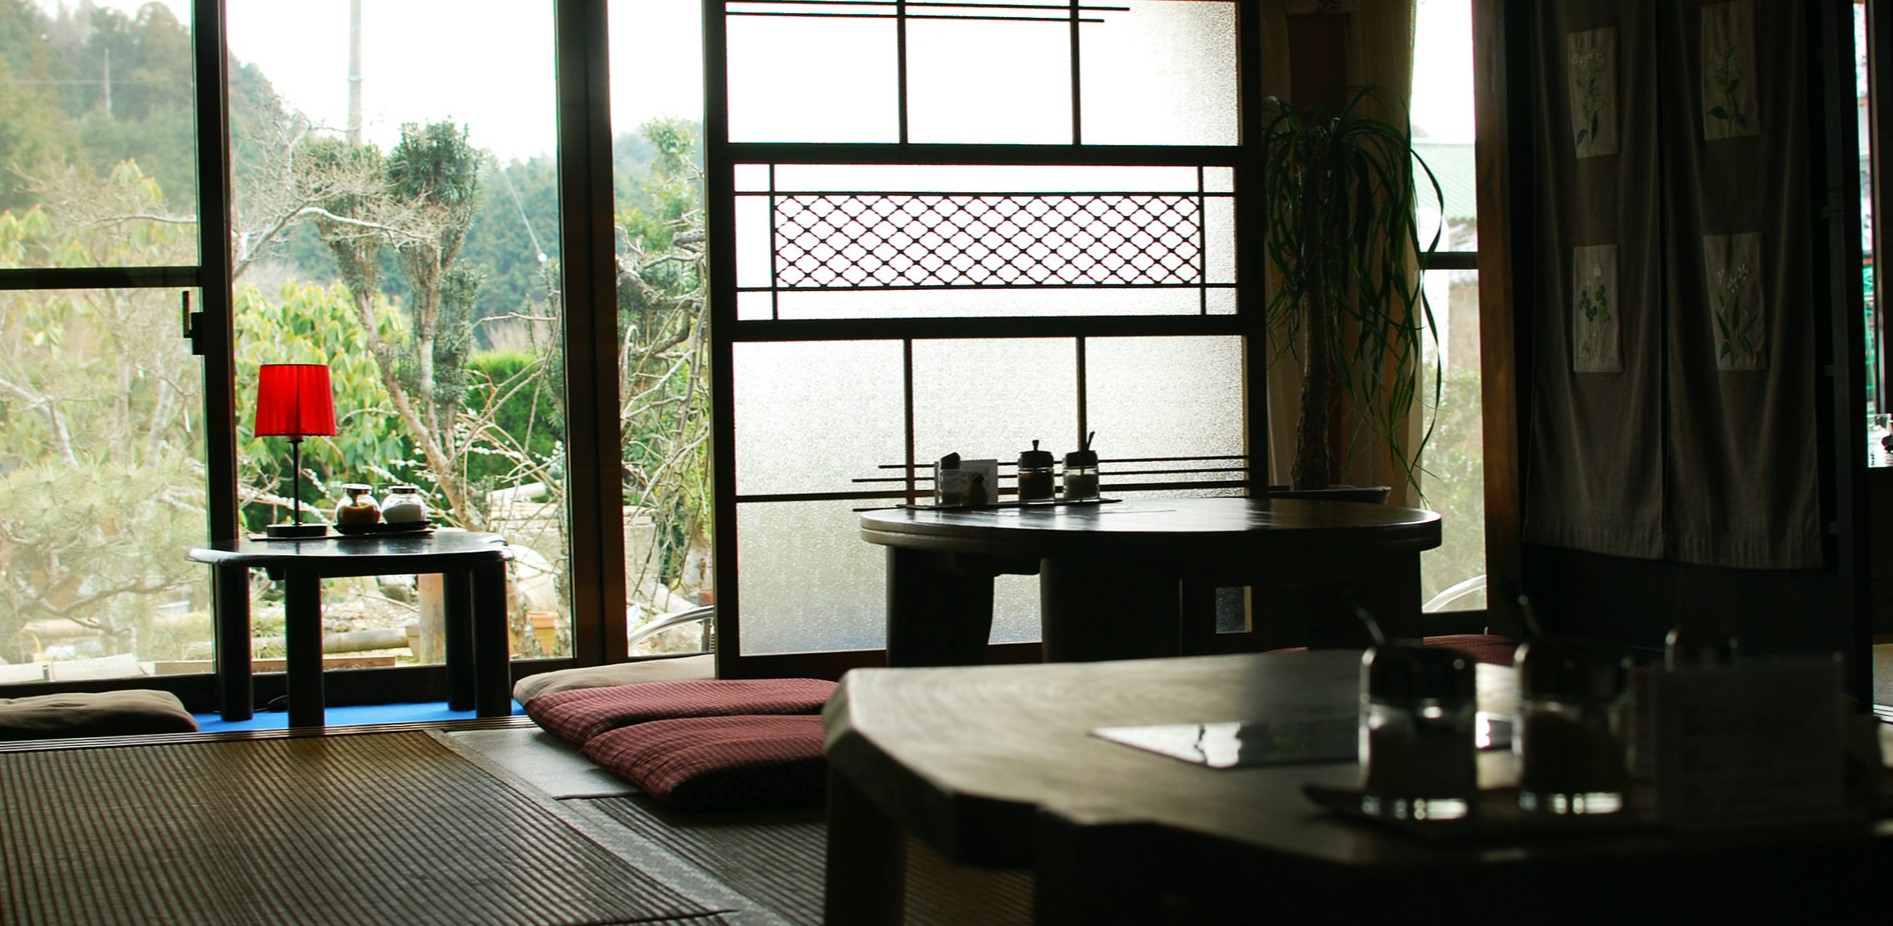 В японском стиле используются низкие столики и подушки вместо стульев